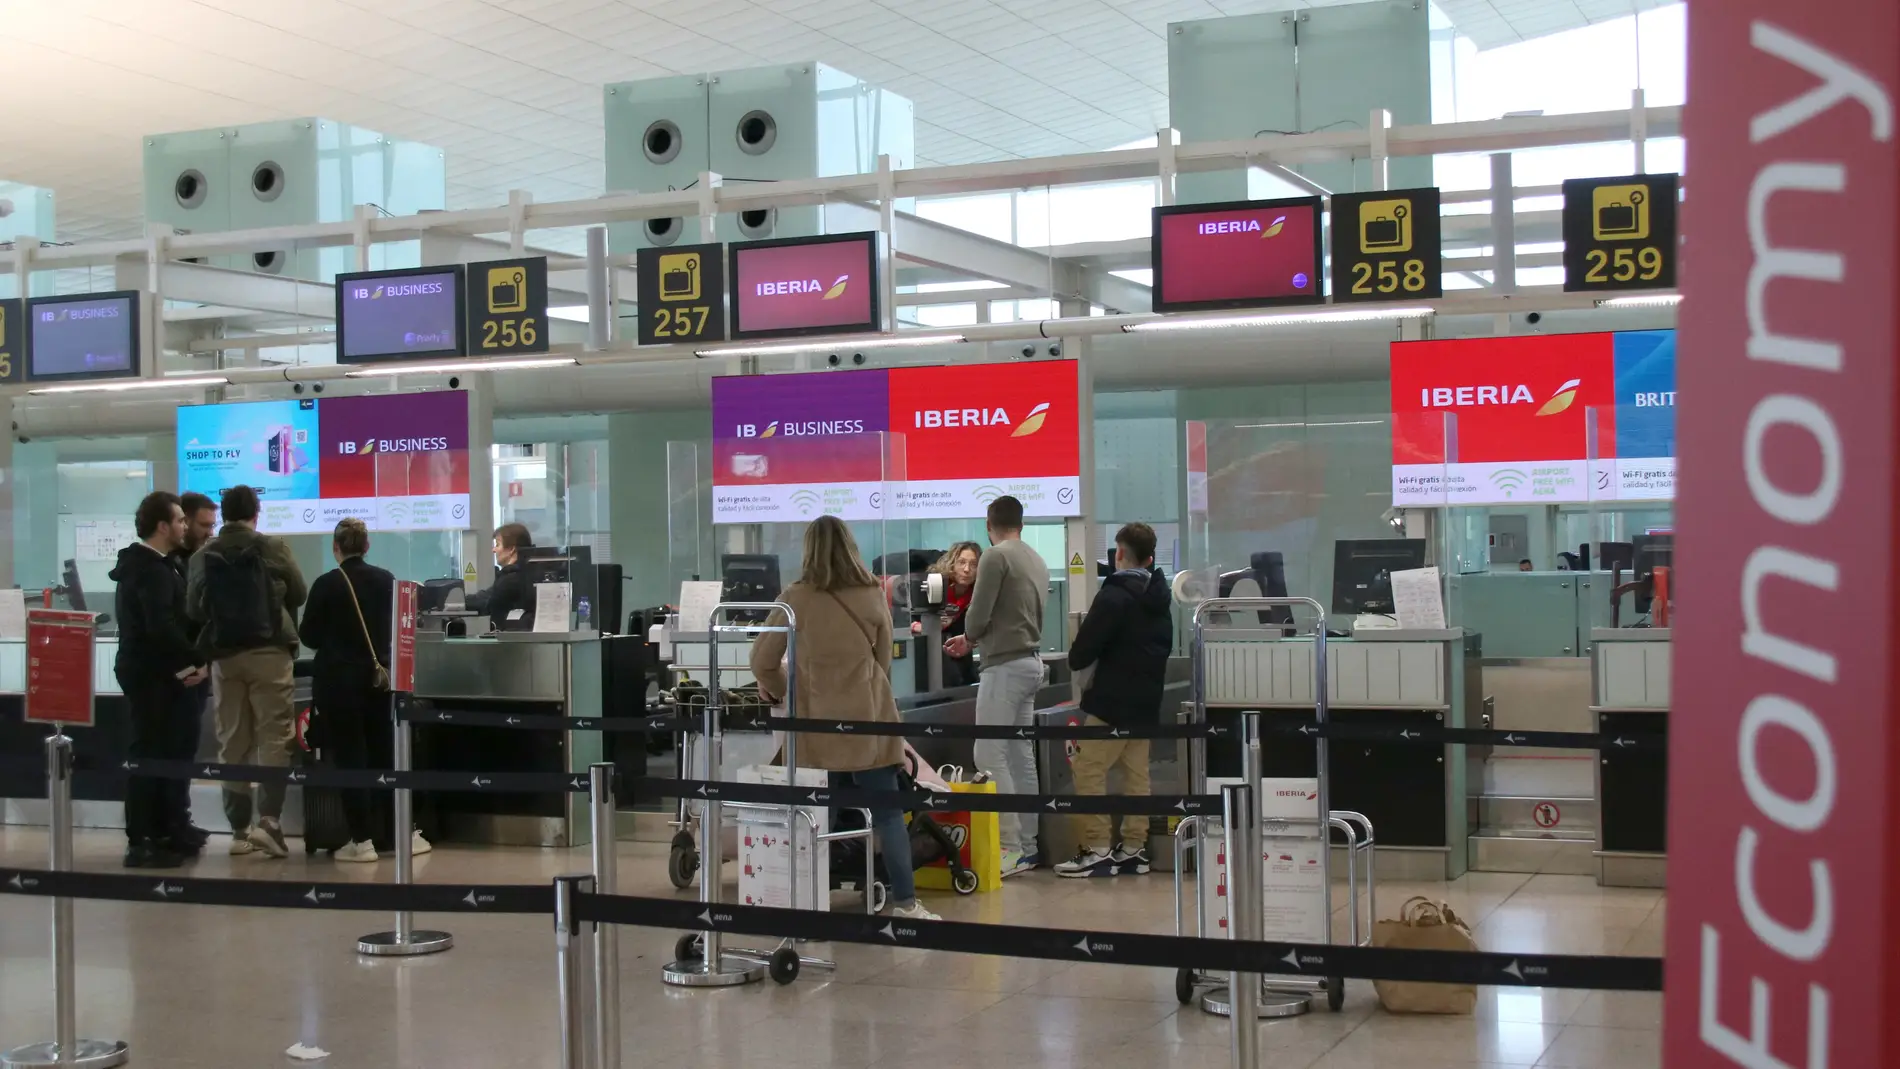 Iberia admet problemes amb centenars de maletes en 3 dels 29 aeroports que gestiona el servei de handling